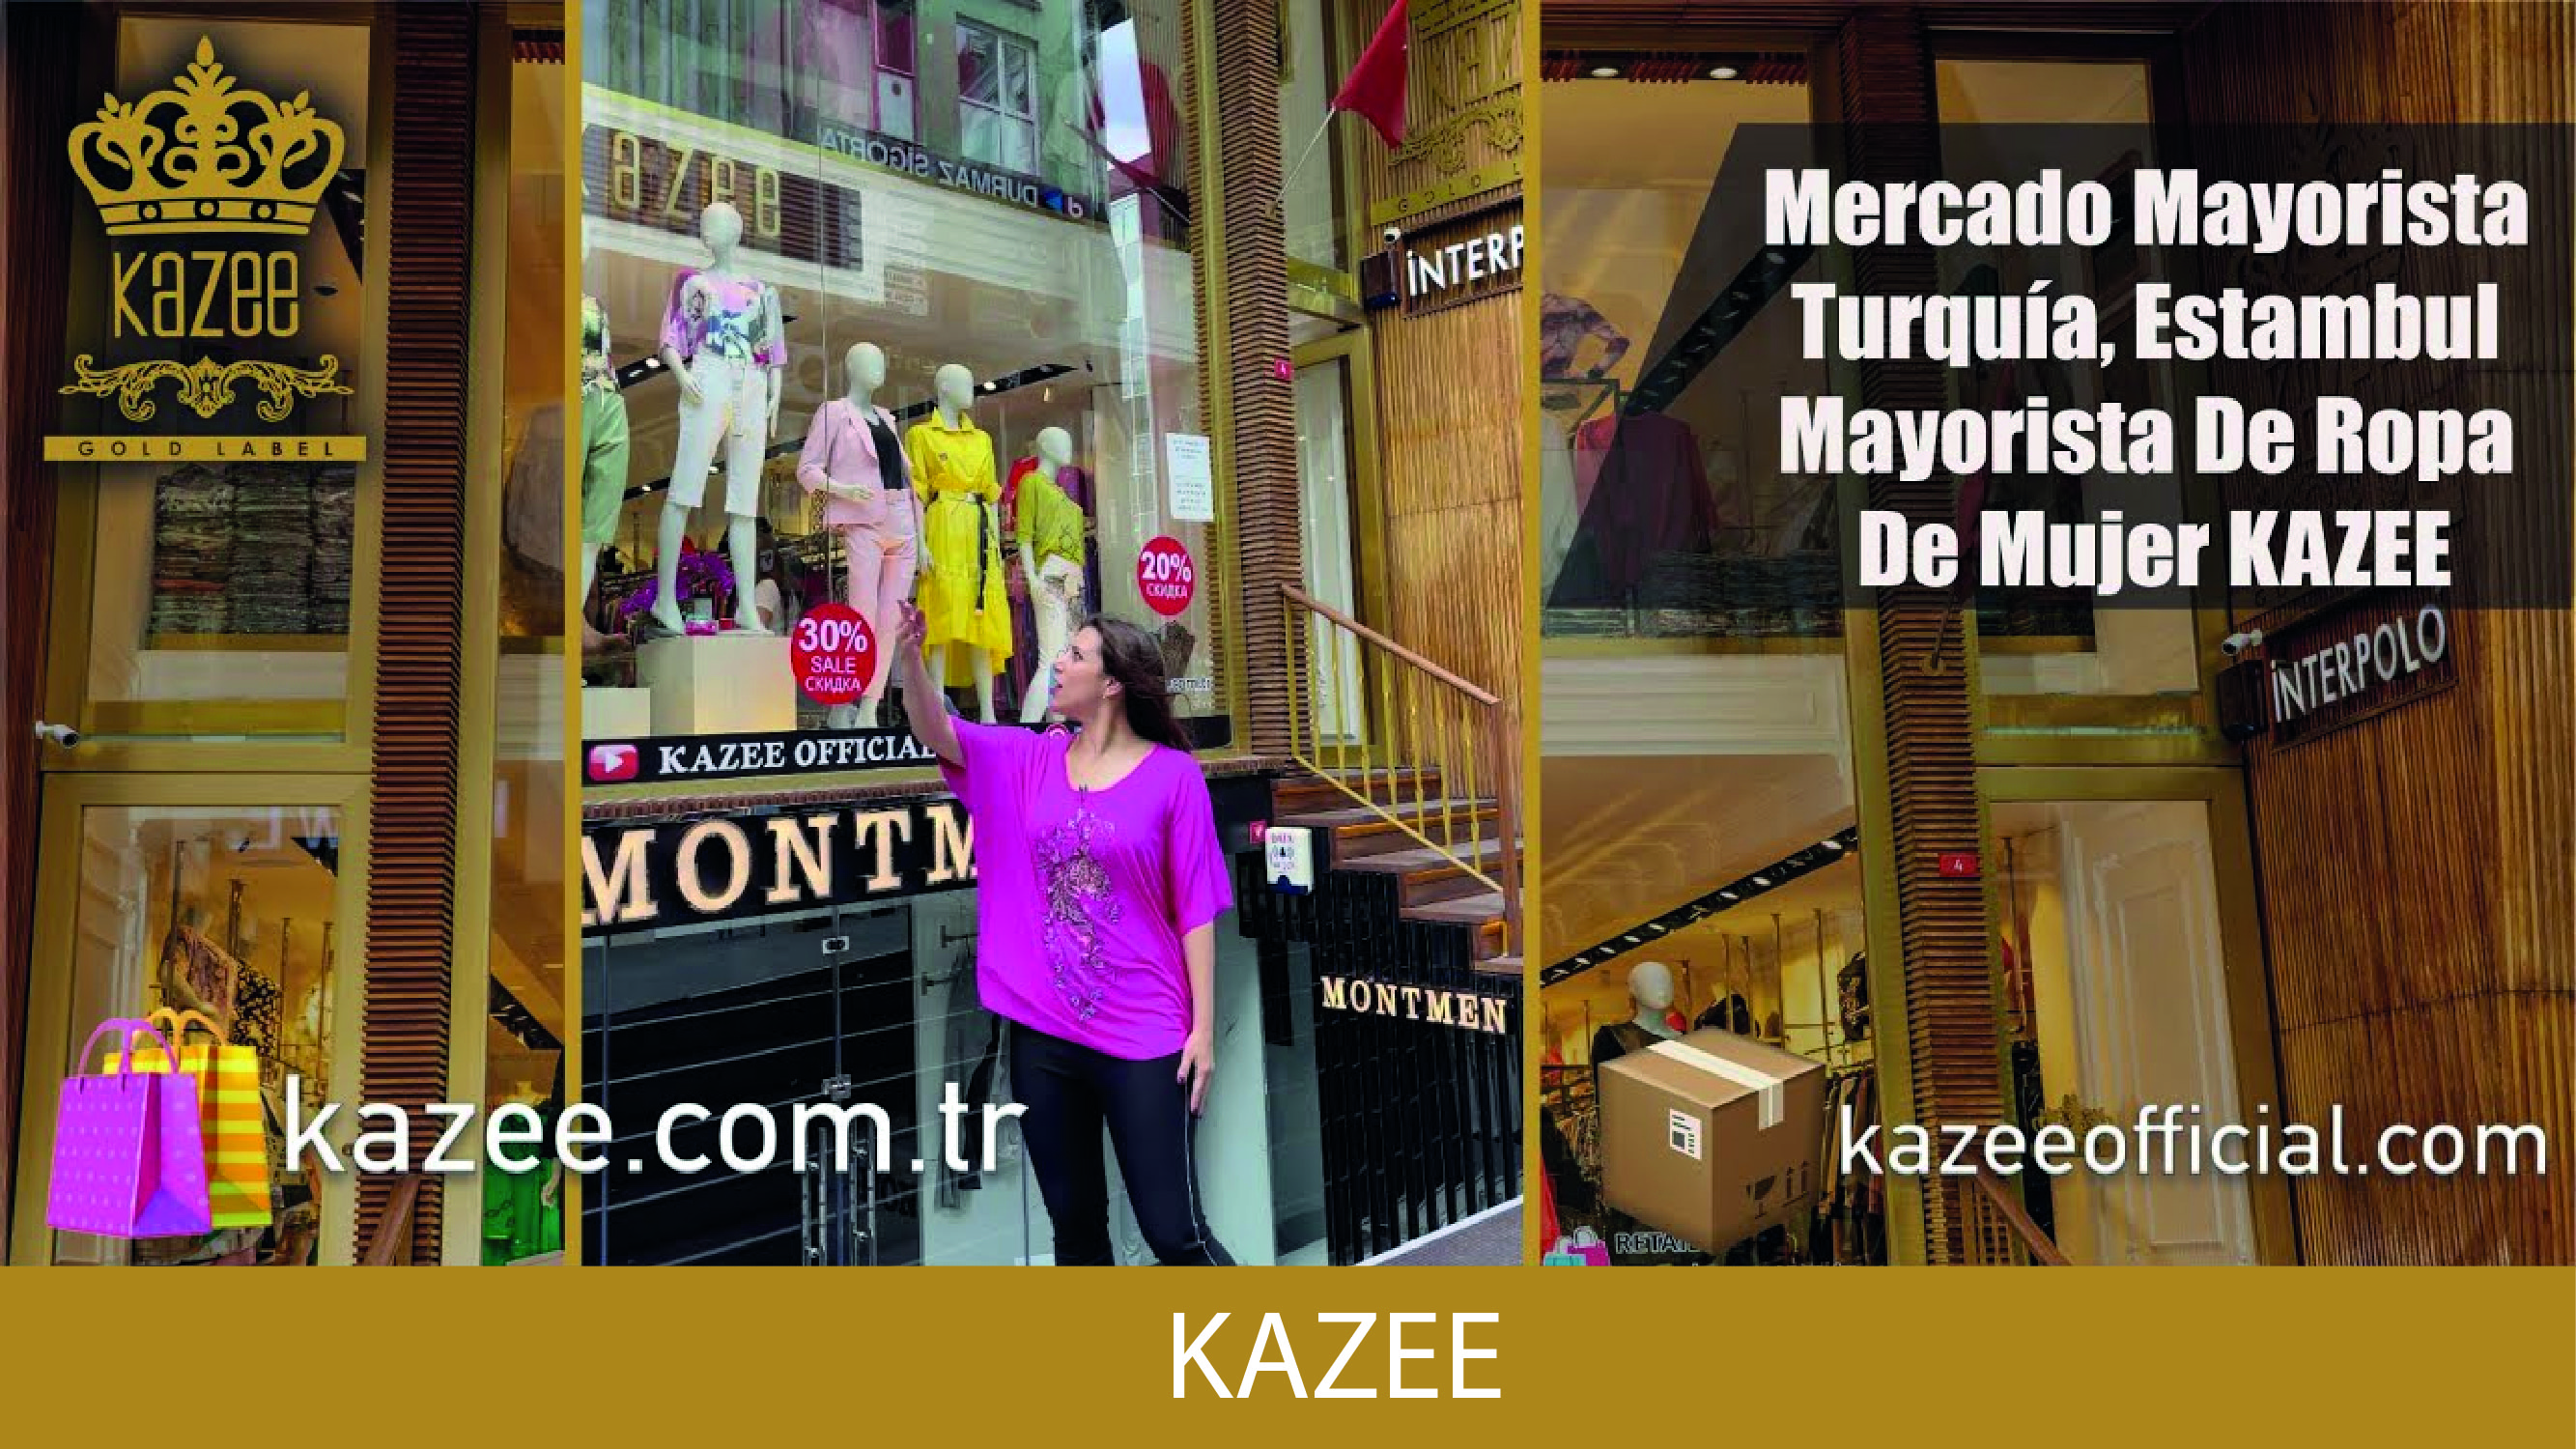 Mercado Mayorista Turquía, Estambul | Mayorista De Ropa De Mujer KAZEE